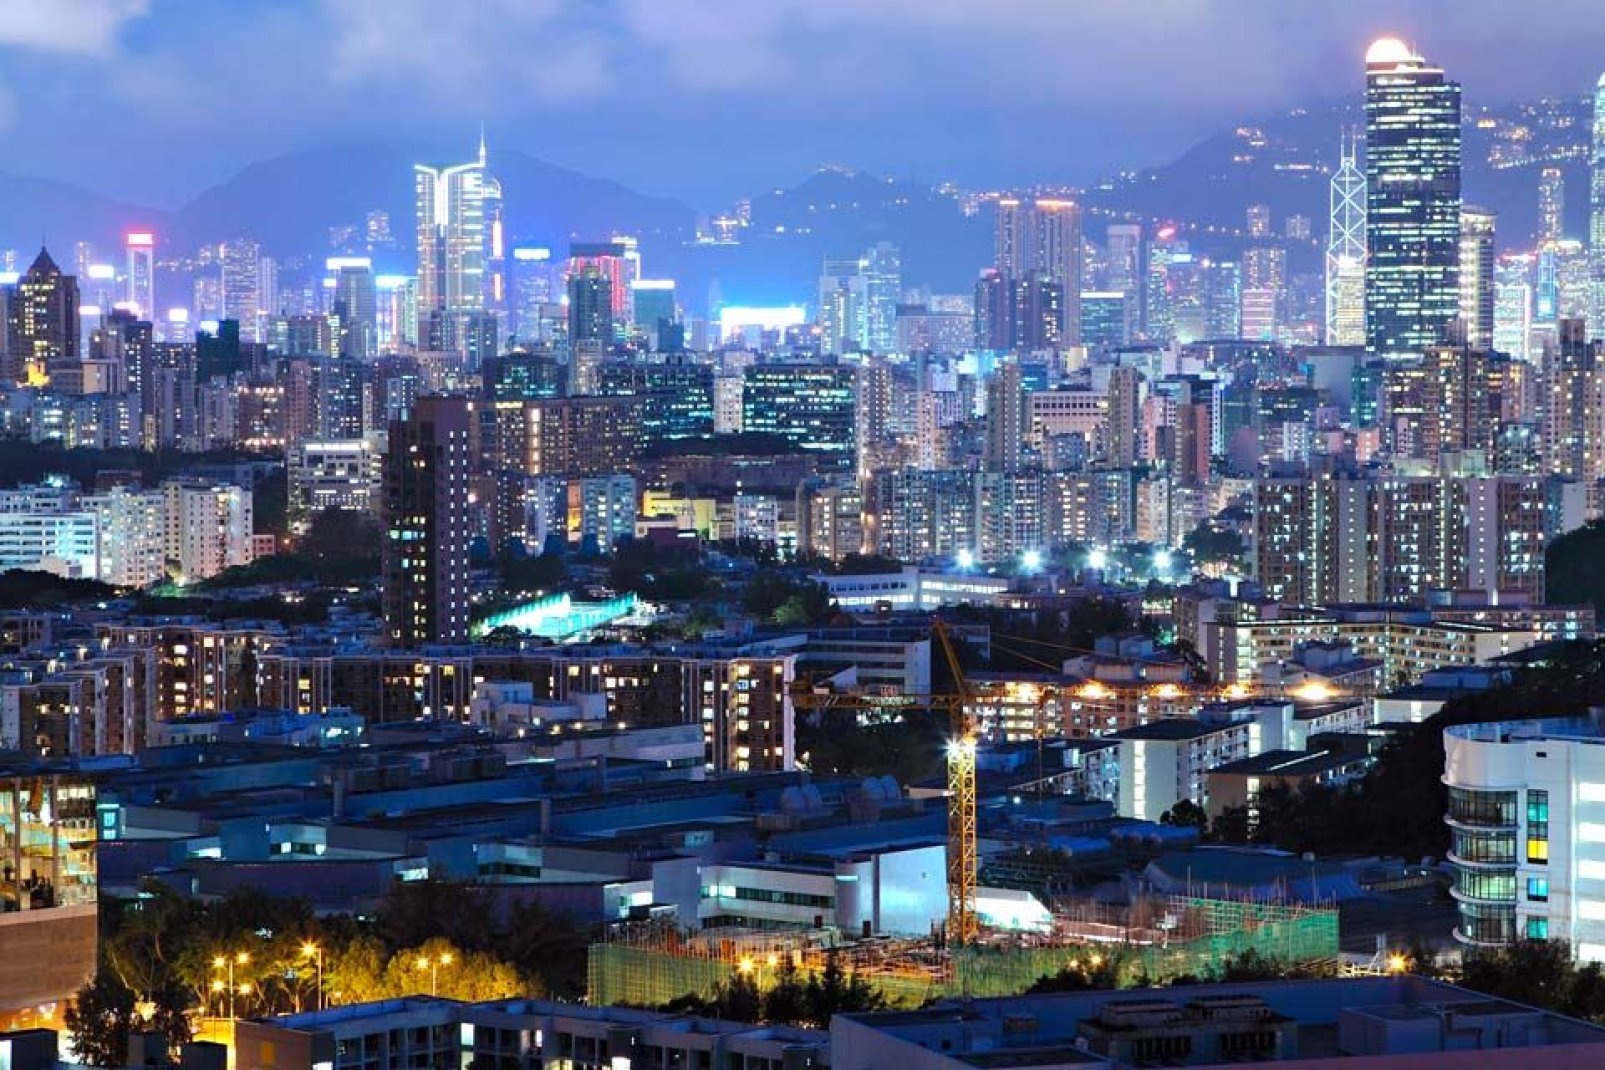 Hong Kong è diventata una delle città più moderne del mondo. Turismo, commercio e innovazione occupano oggi un posto di prim'ordine.